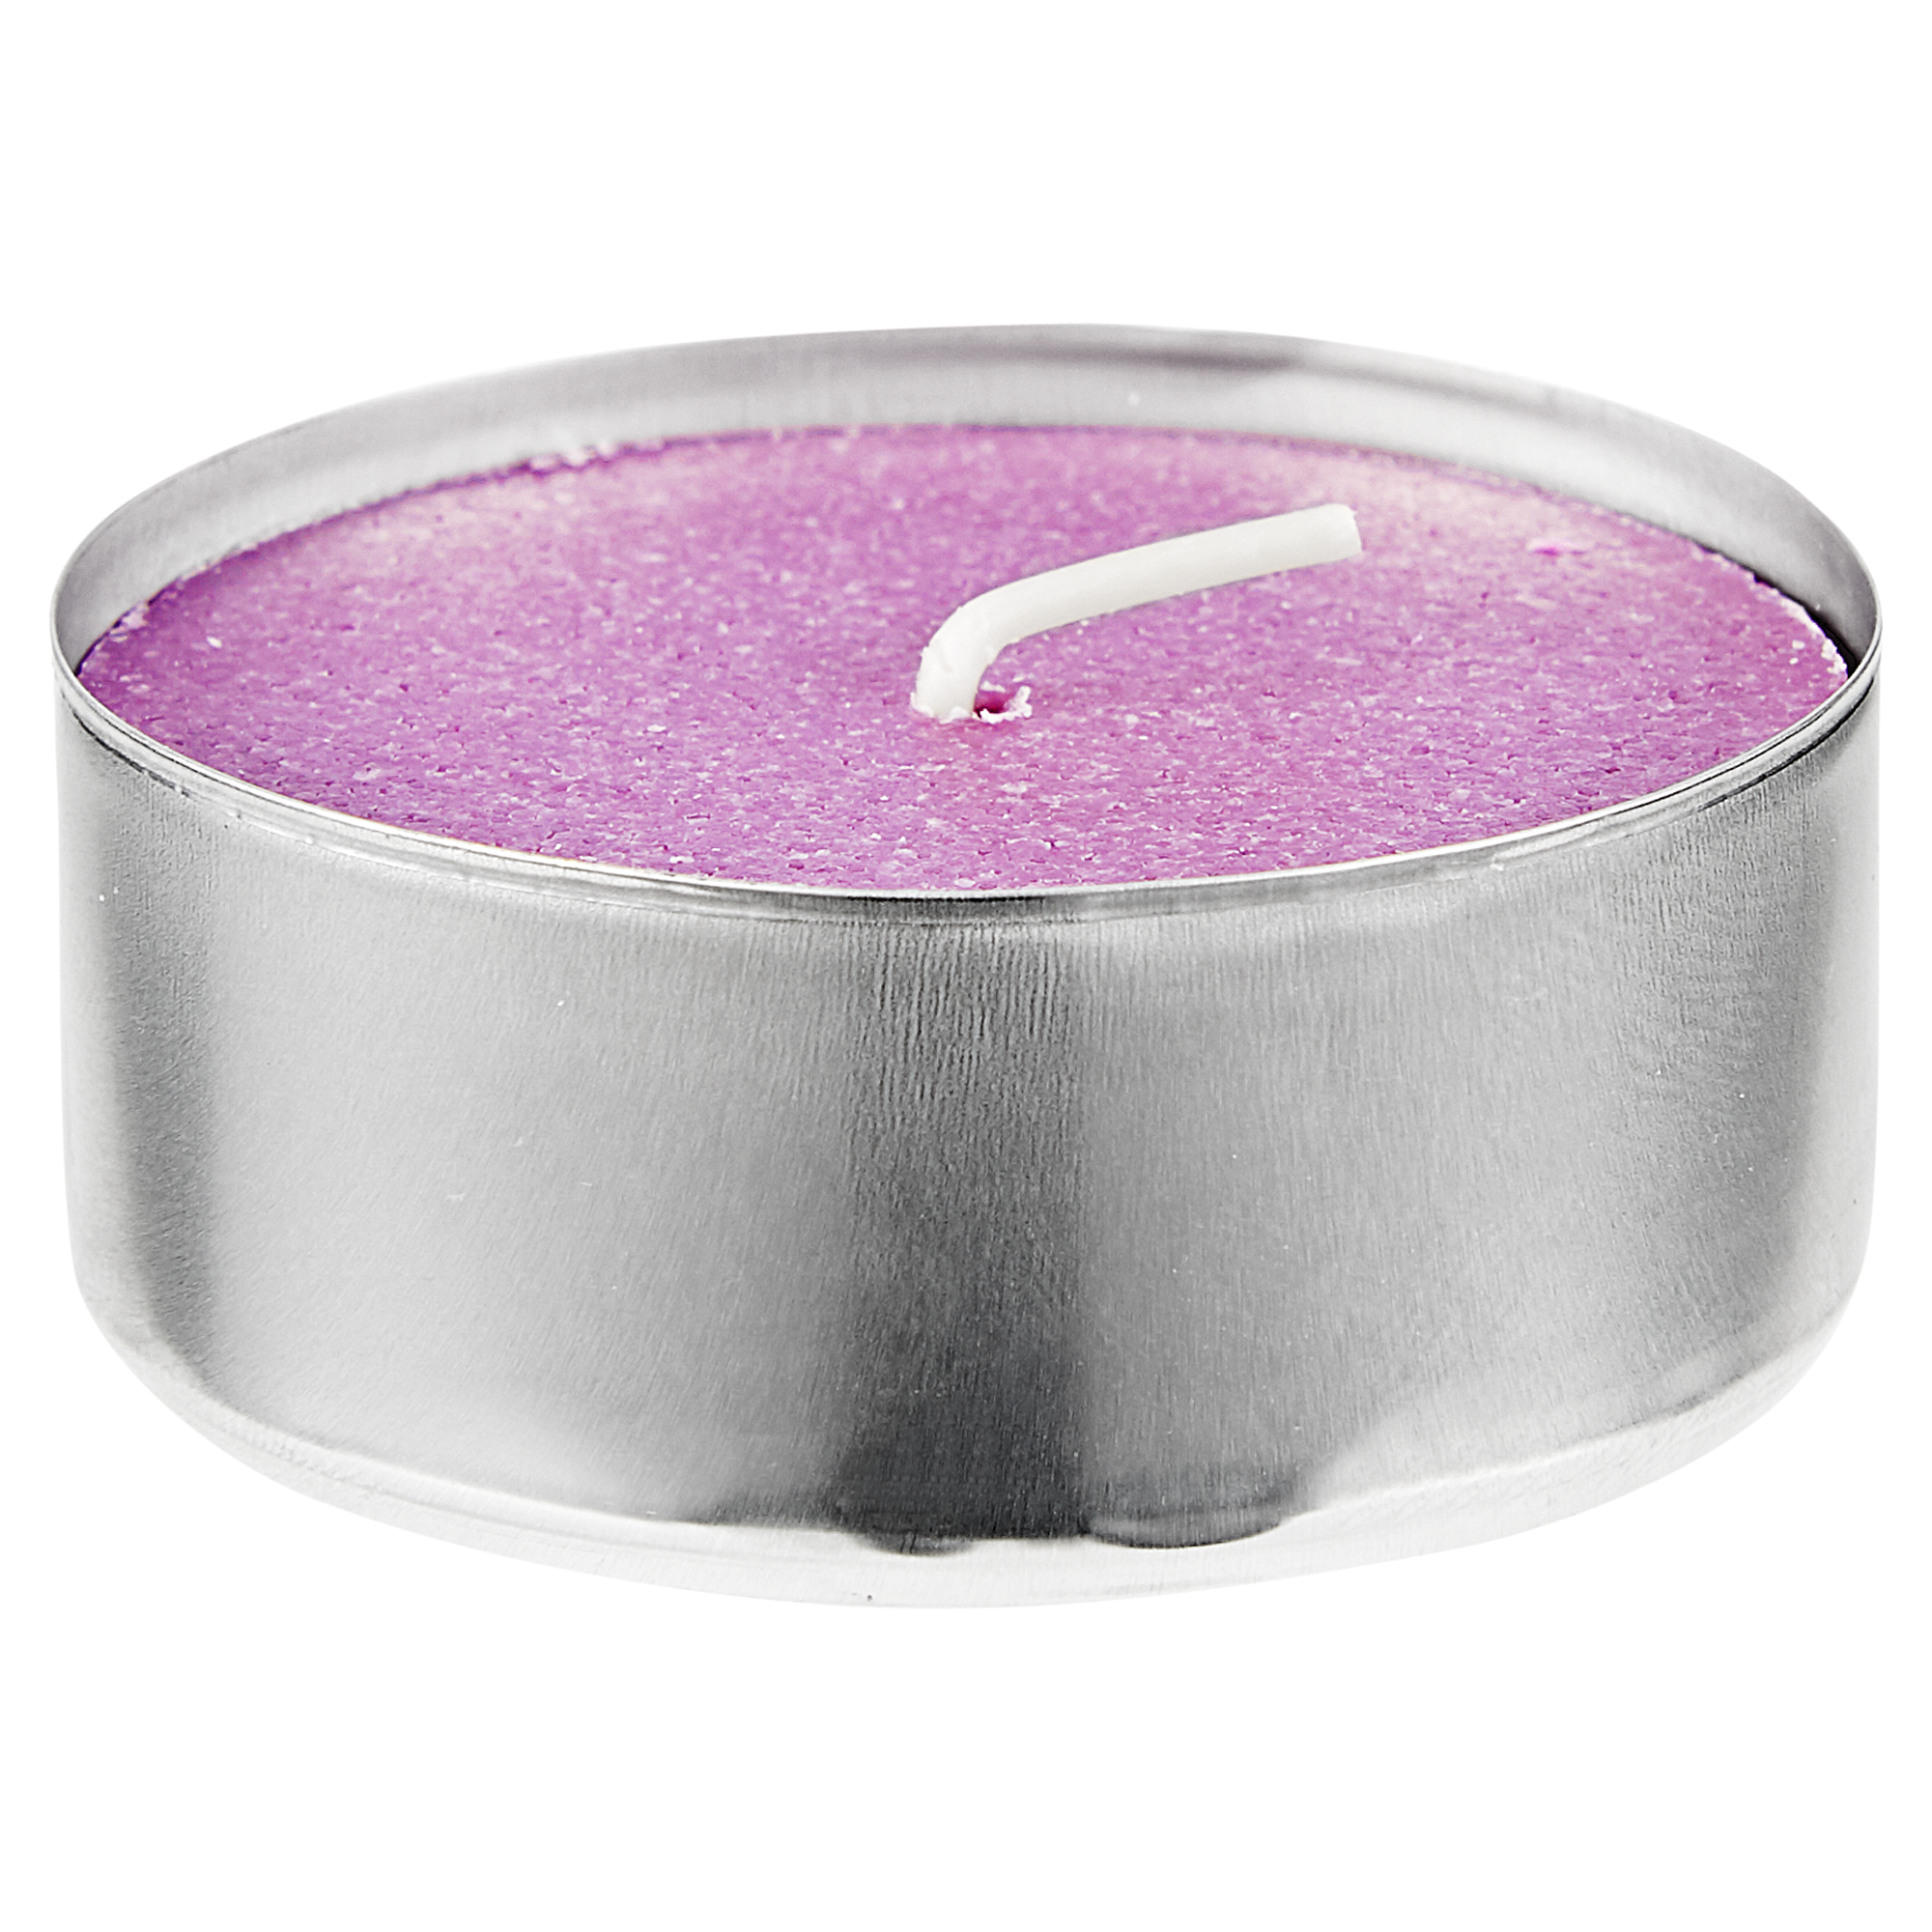 Duftkerzen "Lavender Dream" Maxi 6 Stück + product picture